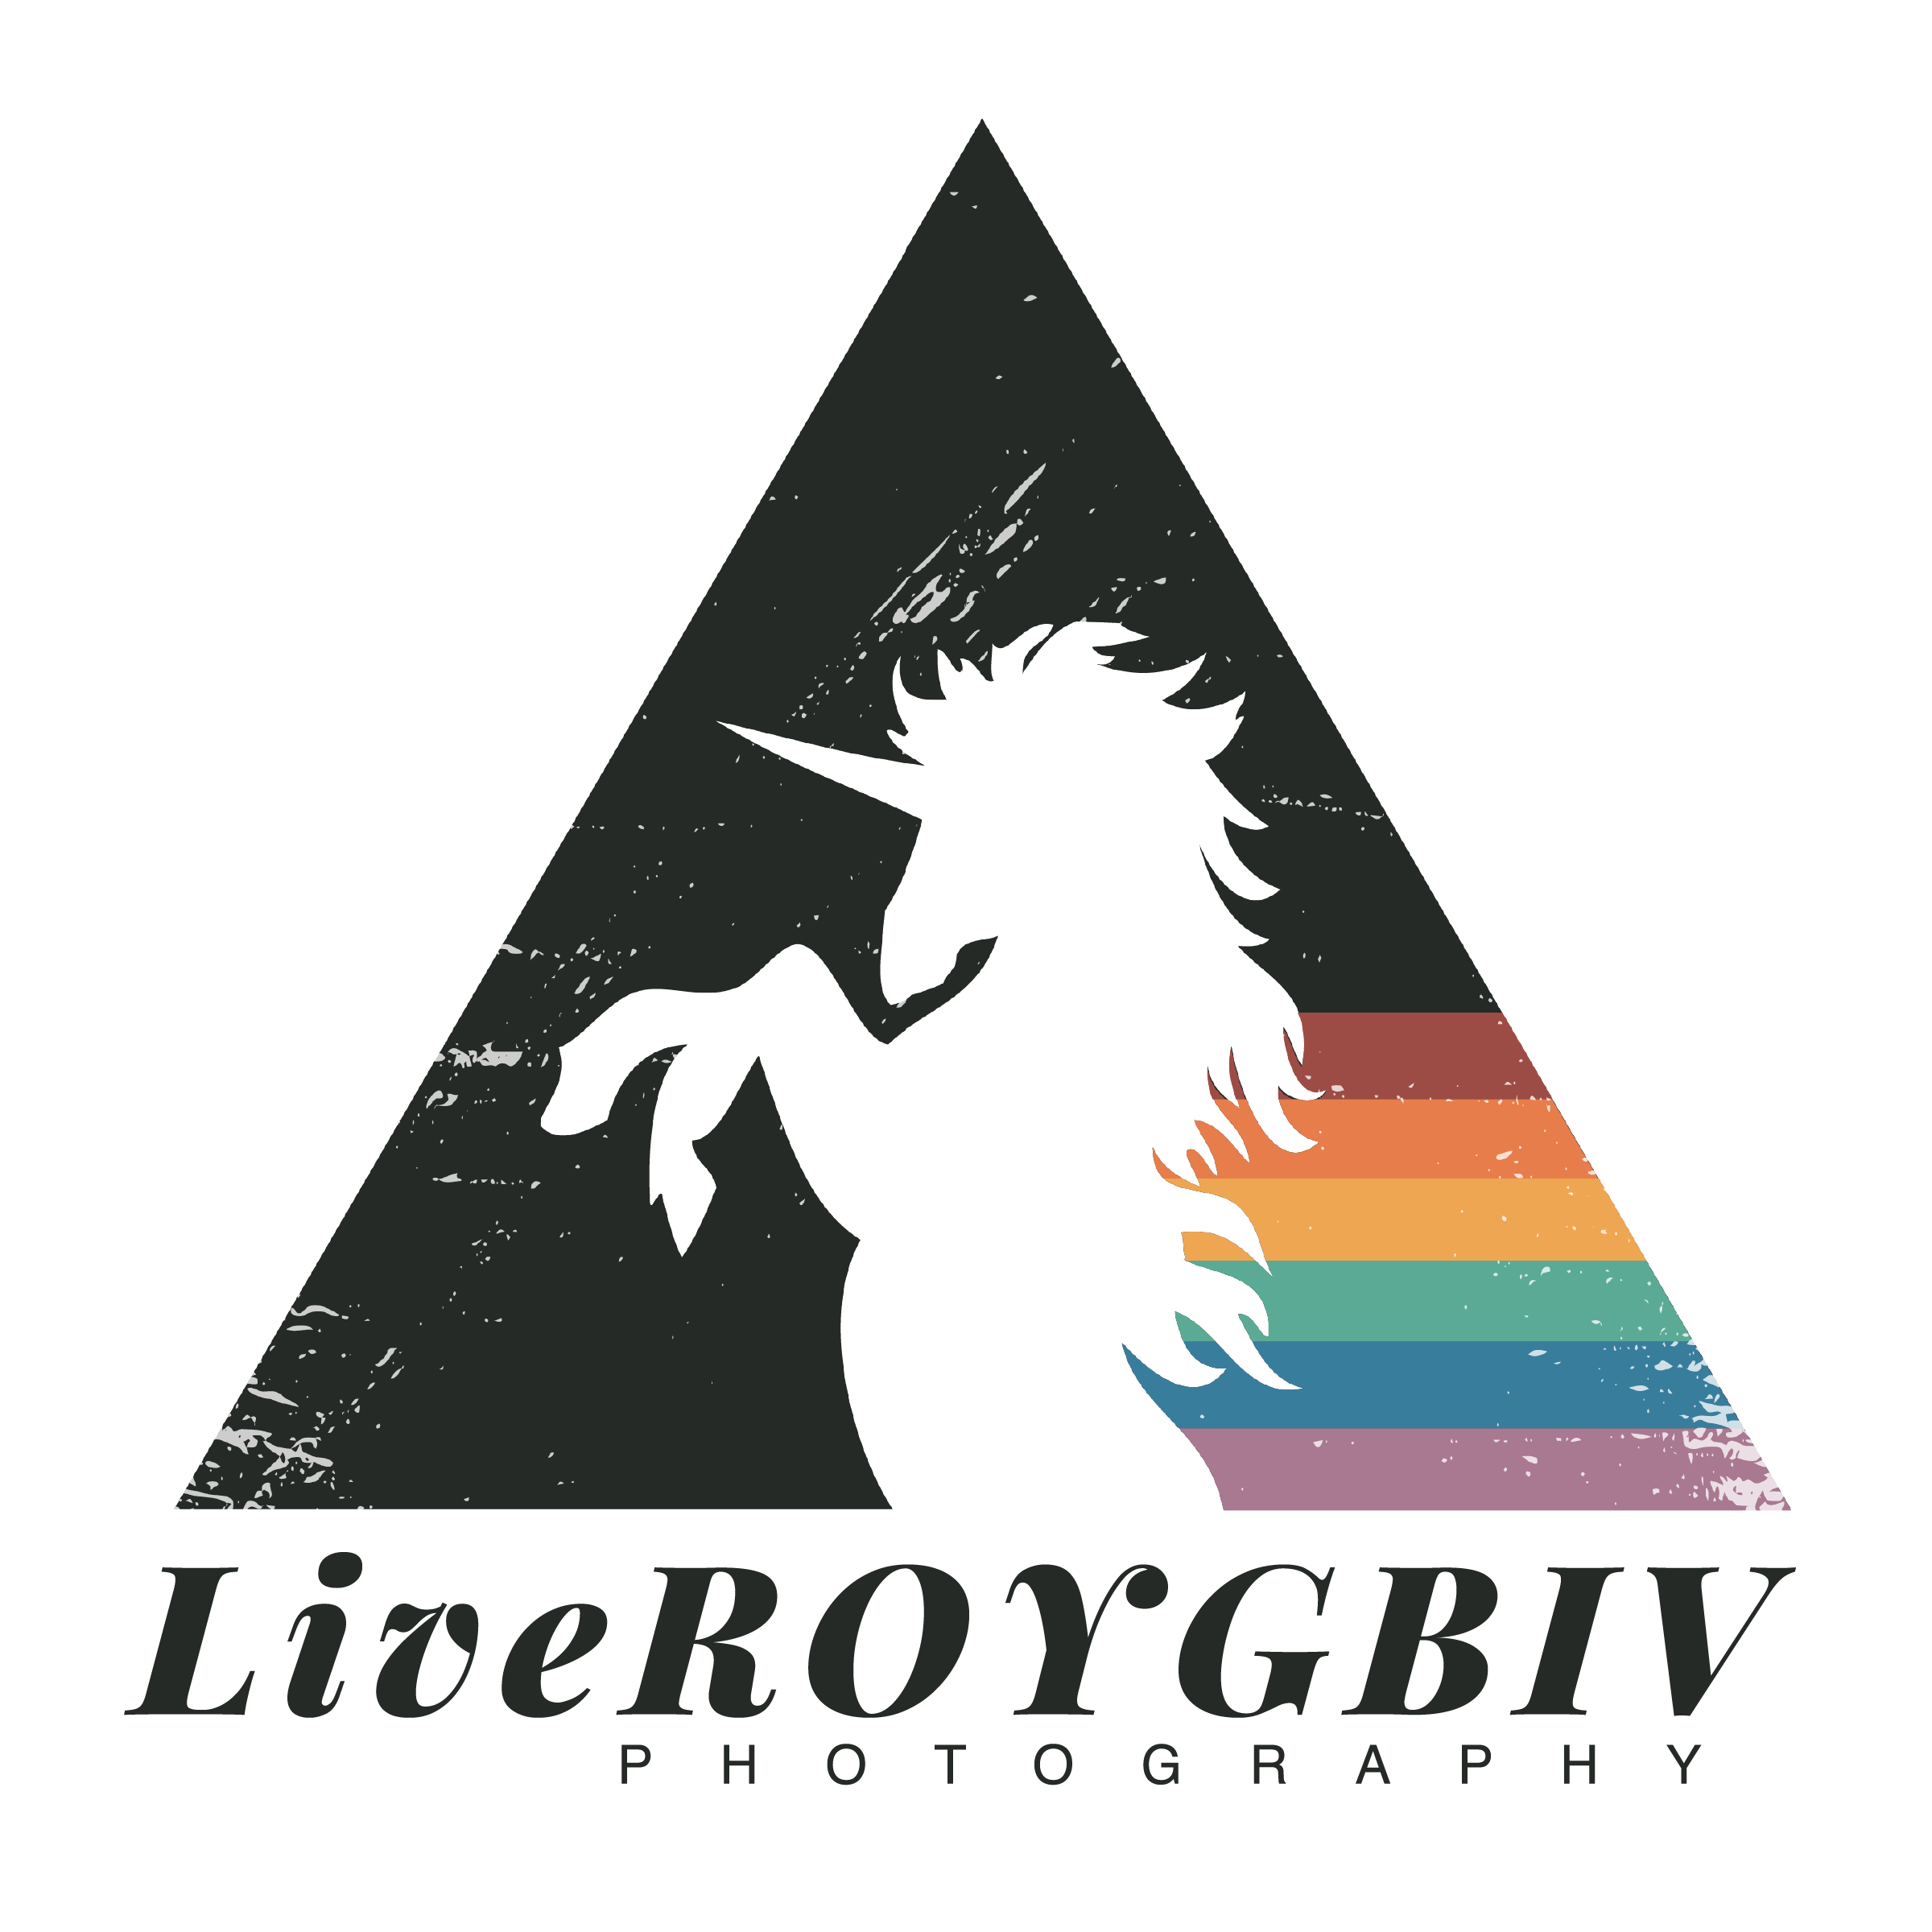 LiveROYGBIV Photography Logo